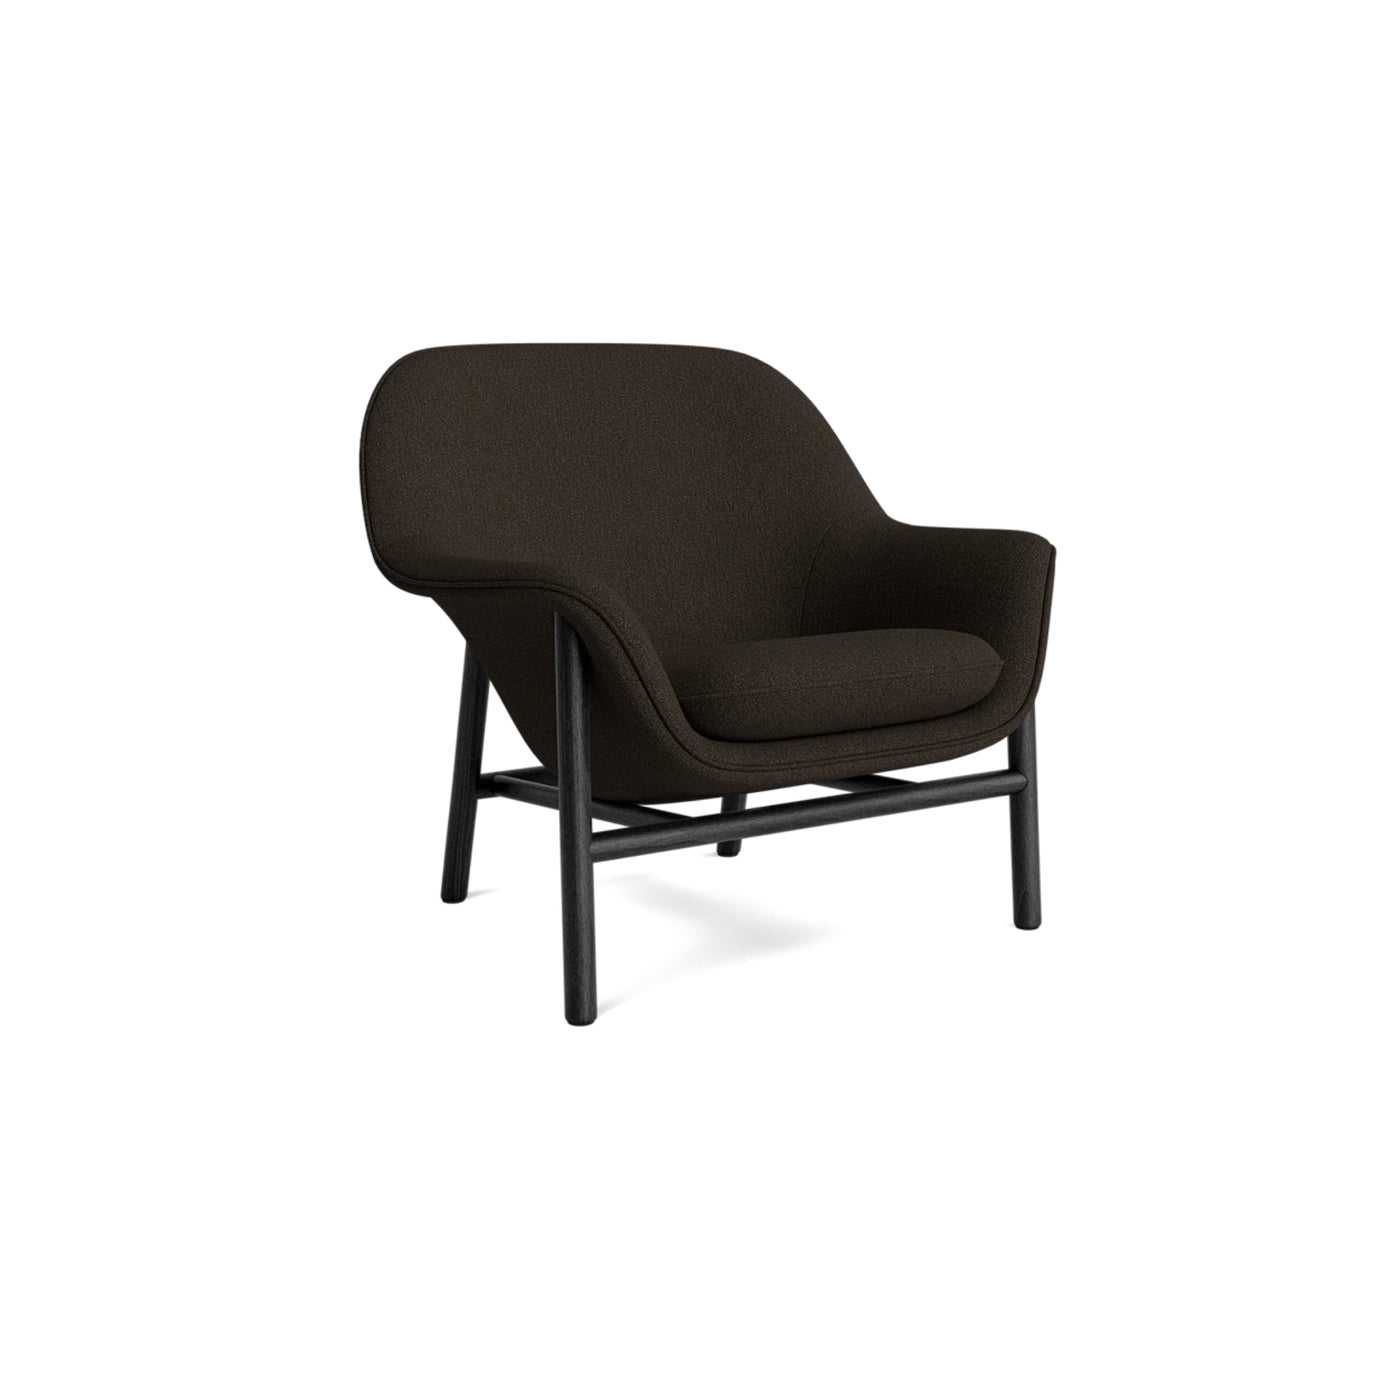 Normann Copenhagen Drape Lounge Chair at someday designs. #colour_hallingdal-376